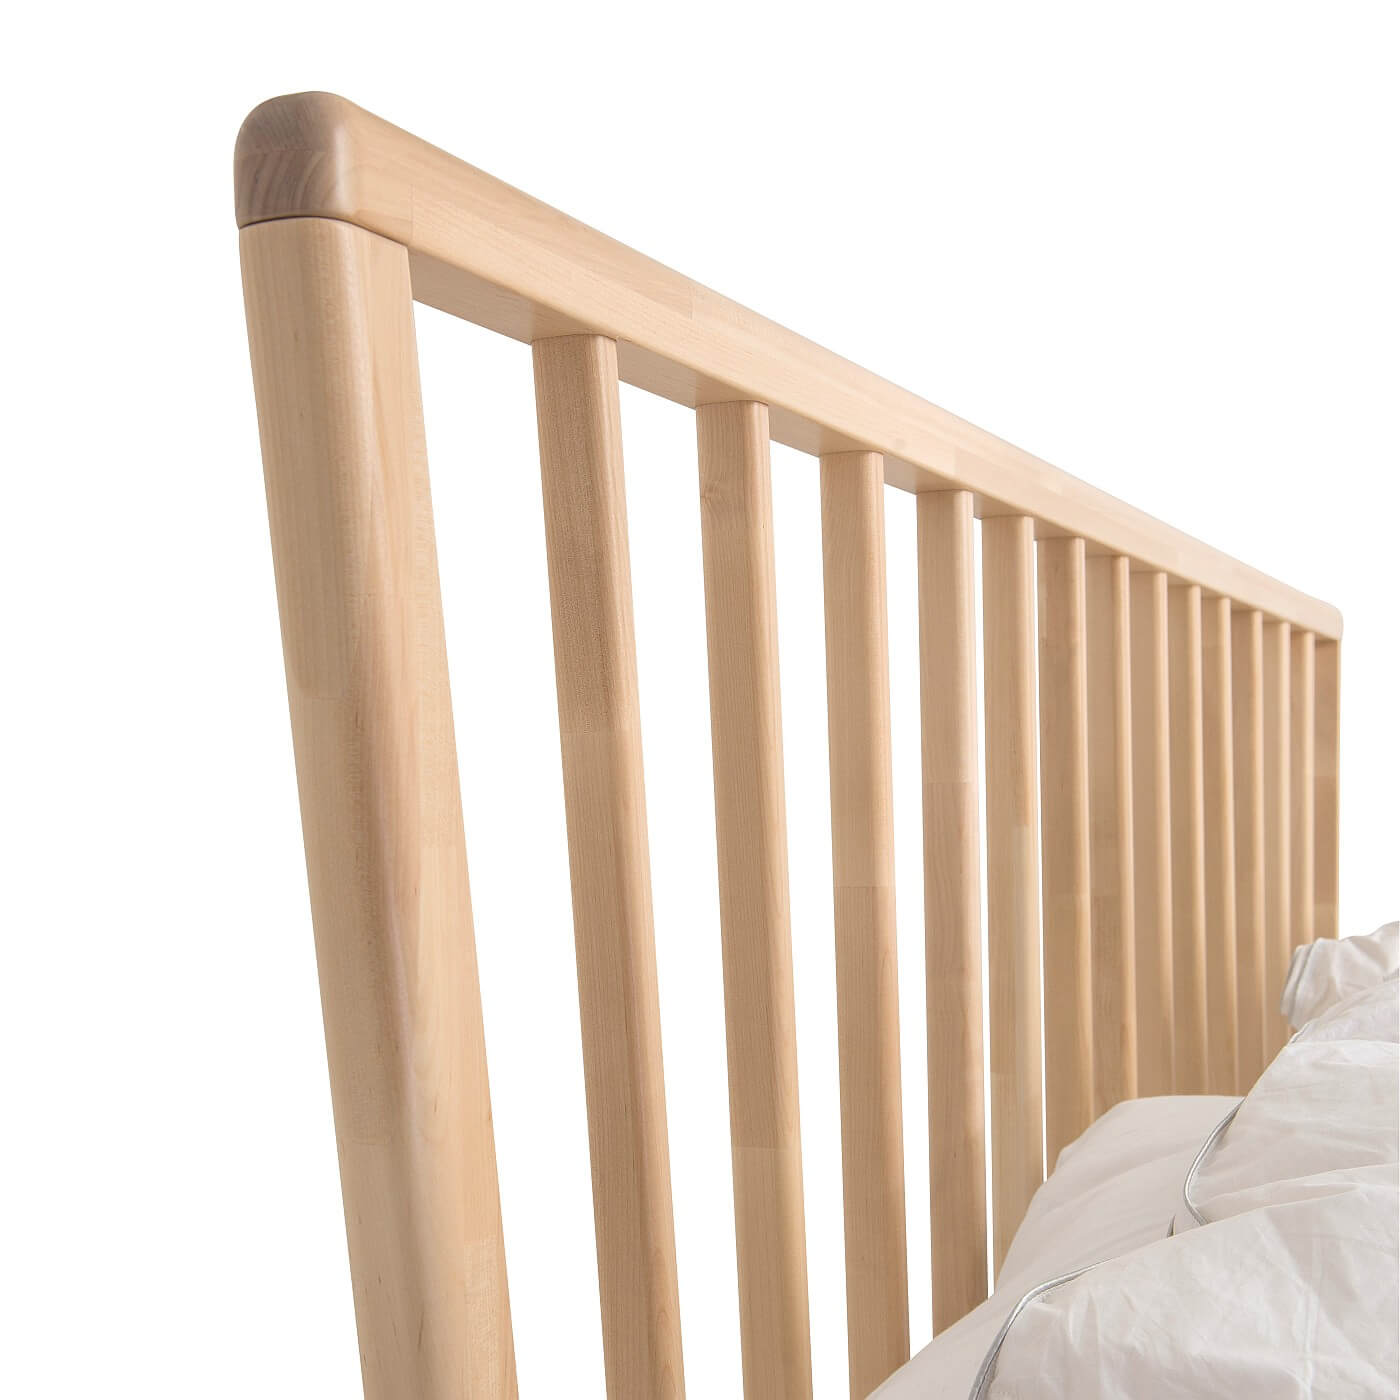 Łóżko skandynawskie MELODIA. Ażurowy drewniany wysoki szczyt łóżka do sypialni z drewna brzozy skandynawskiej. Nowoczesny design